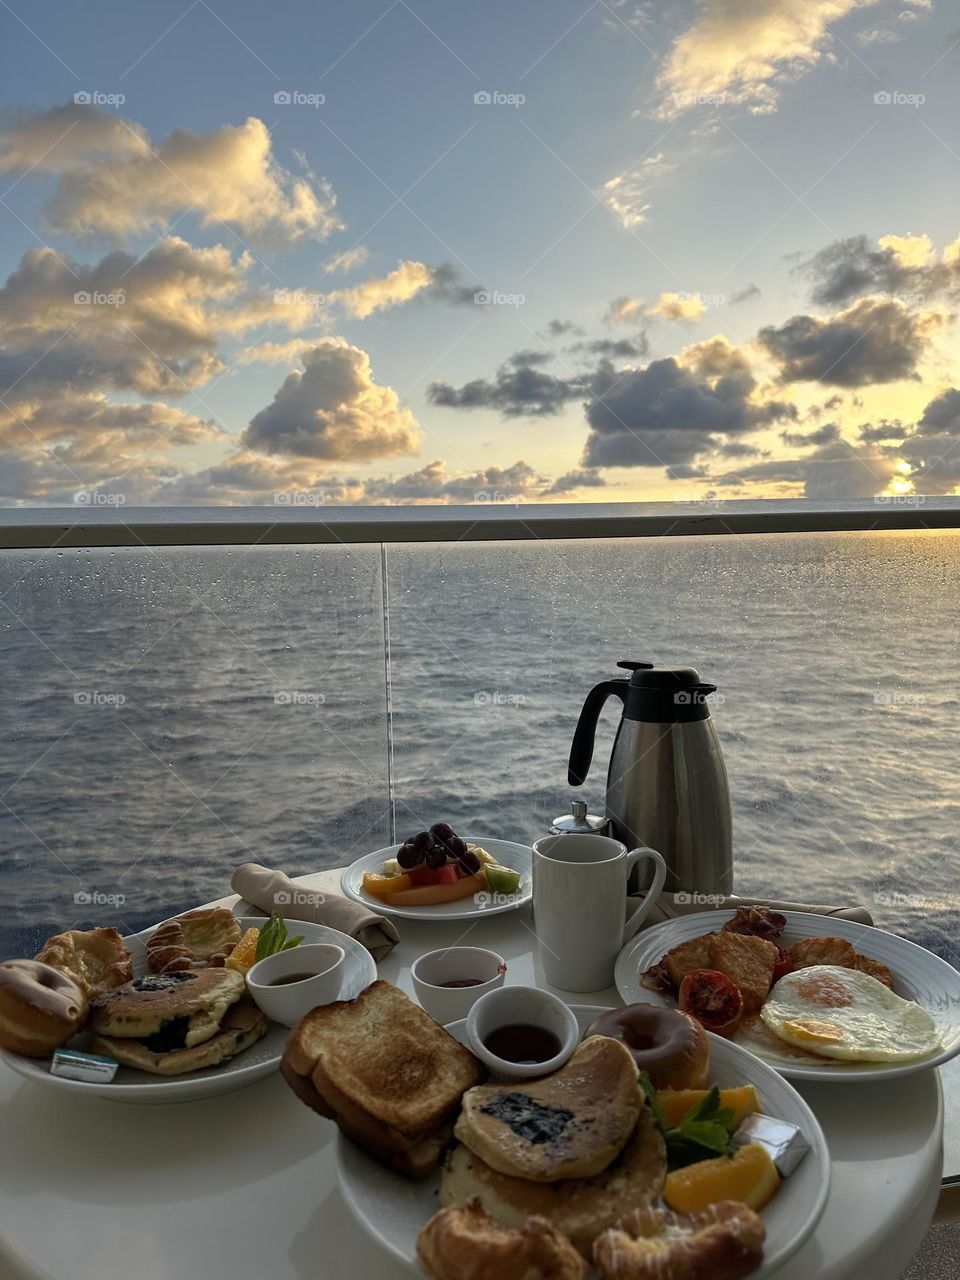 Breakfast over the ocean